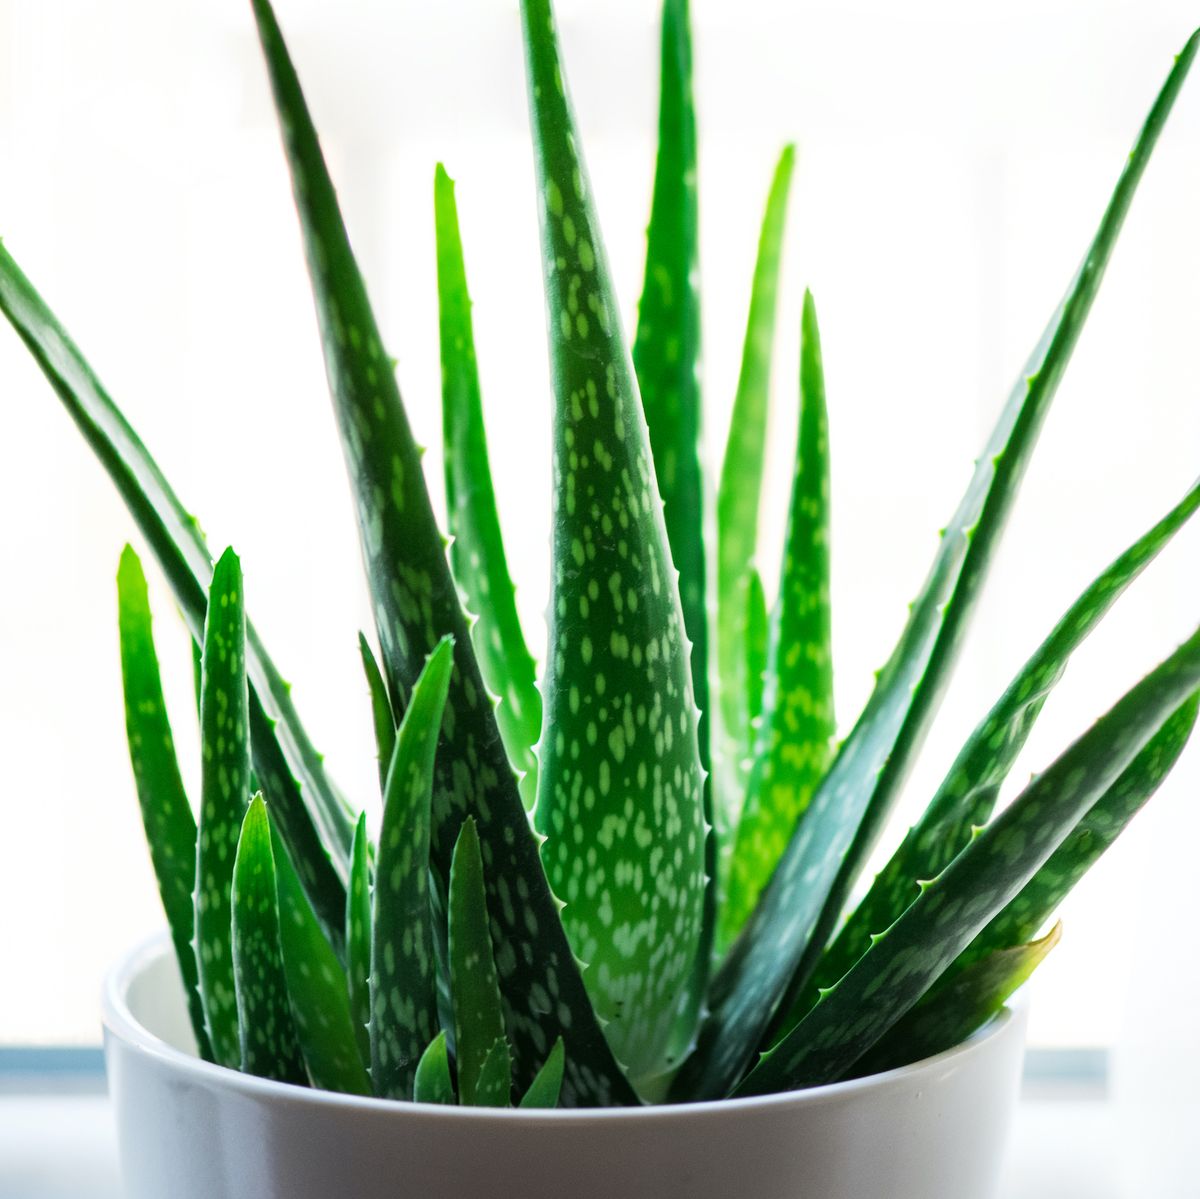 Aloe Vera Plant - An Easy Guide To Aloe Vera Plant Care